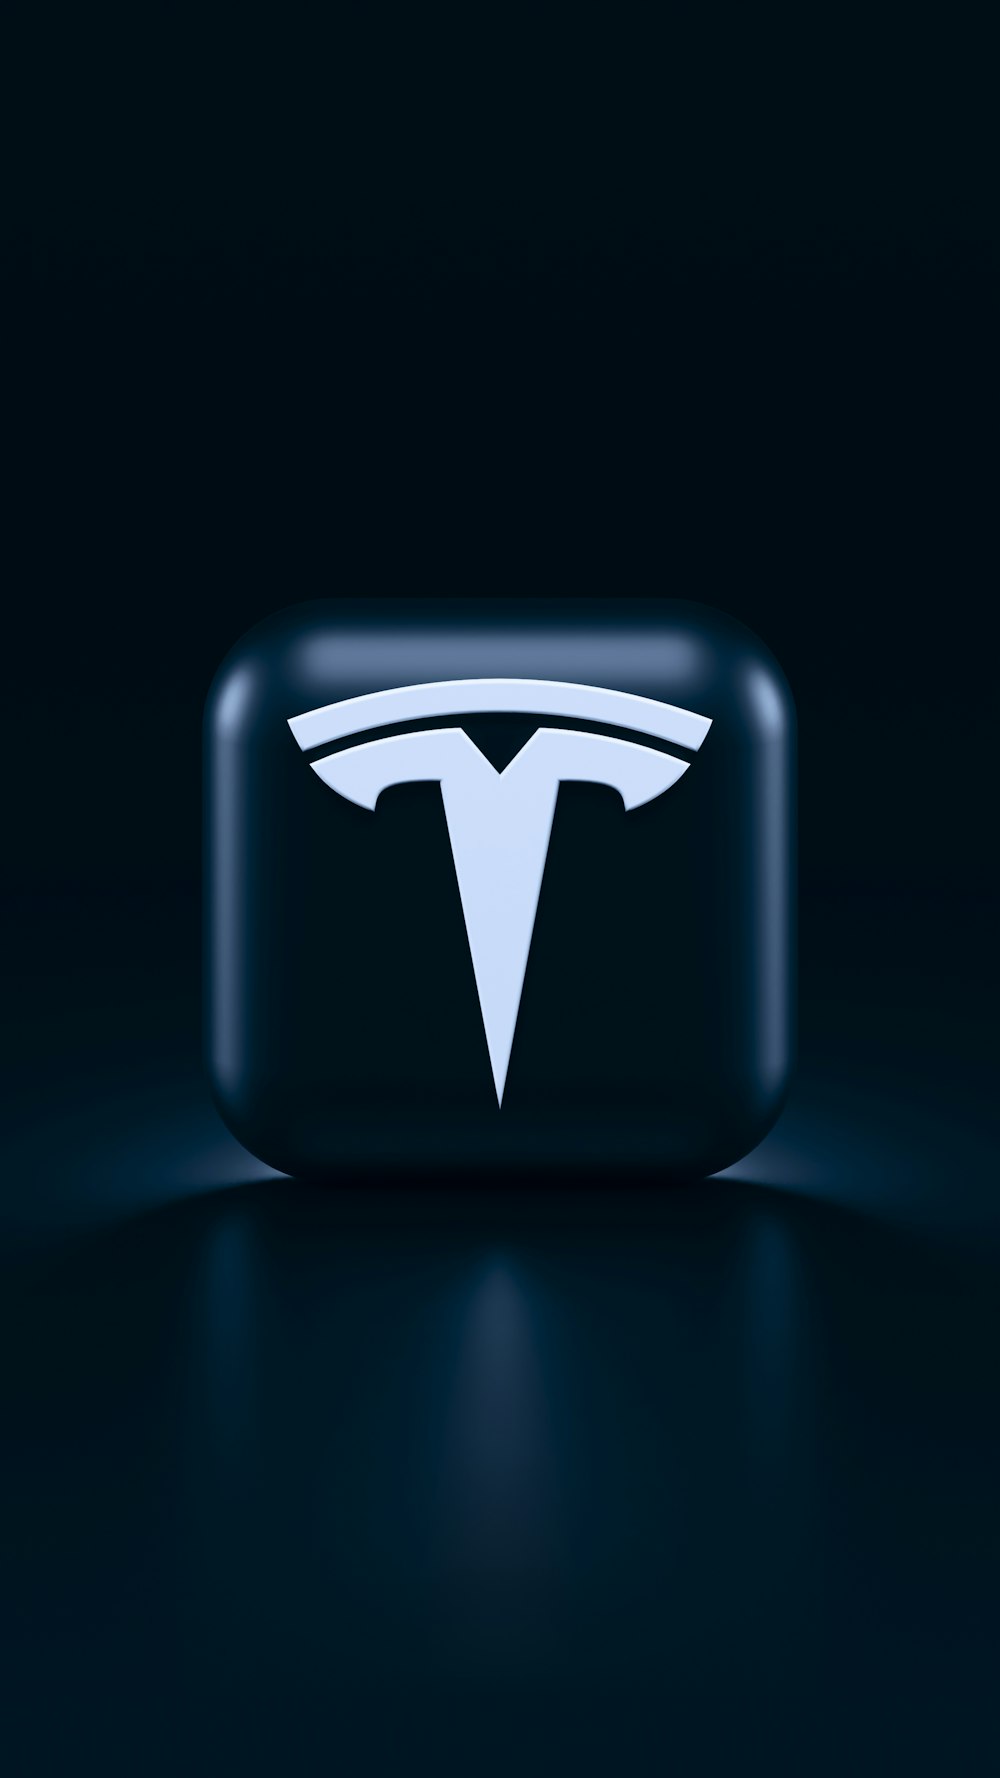 999+ Tesla Logo Pictures  Download Free Images on Unsplash